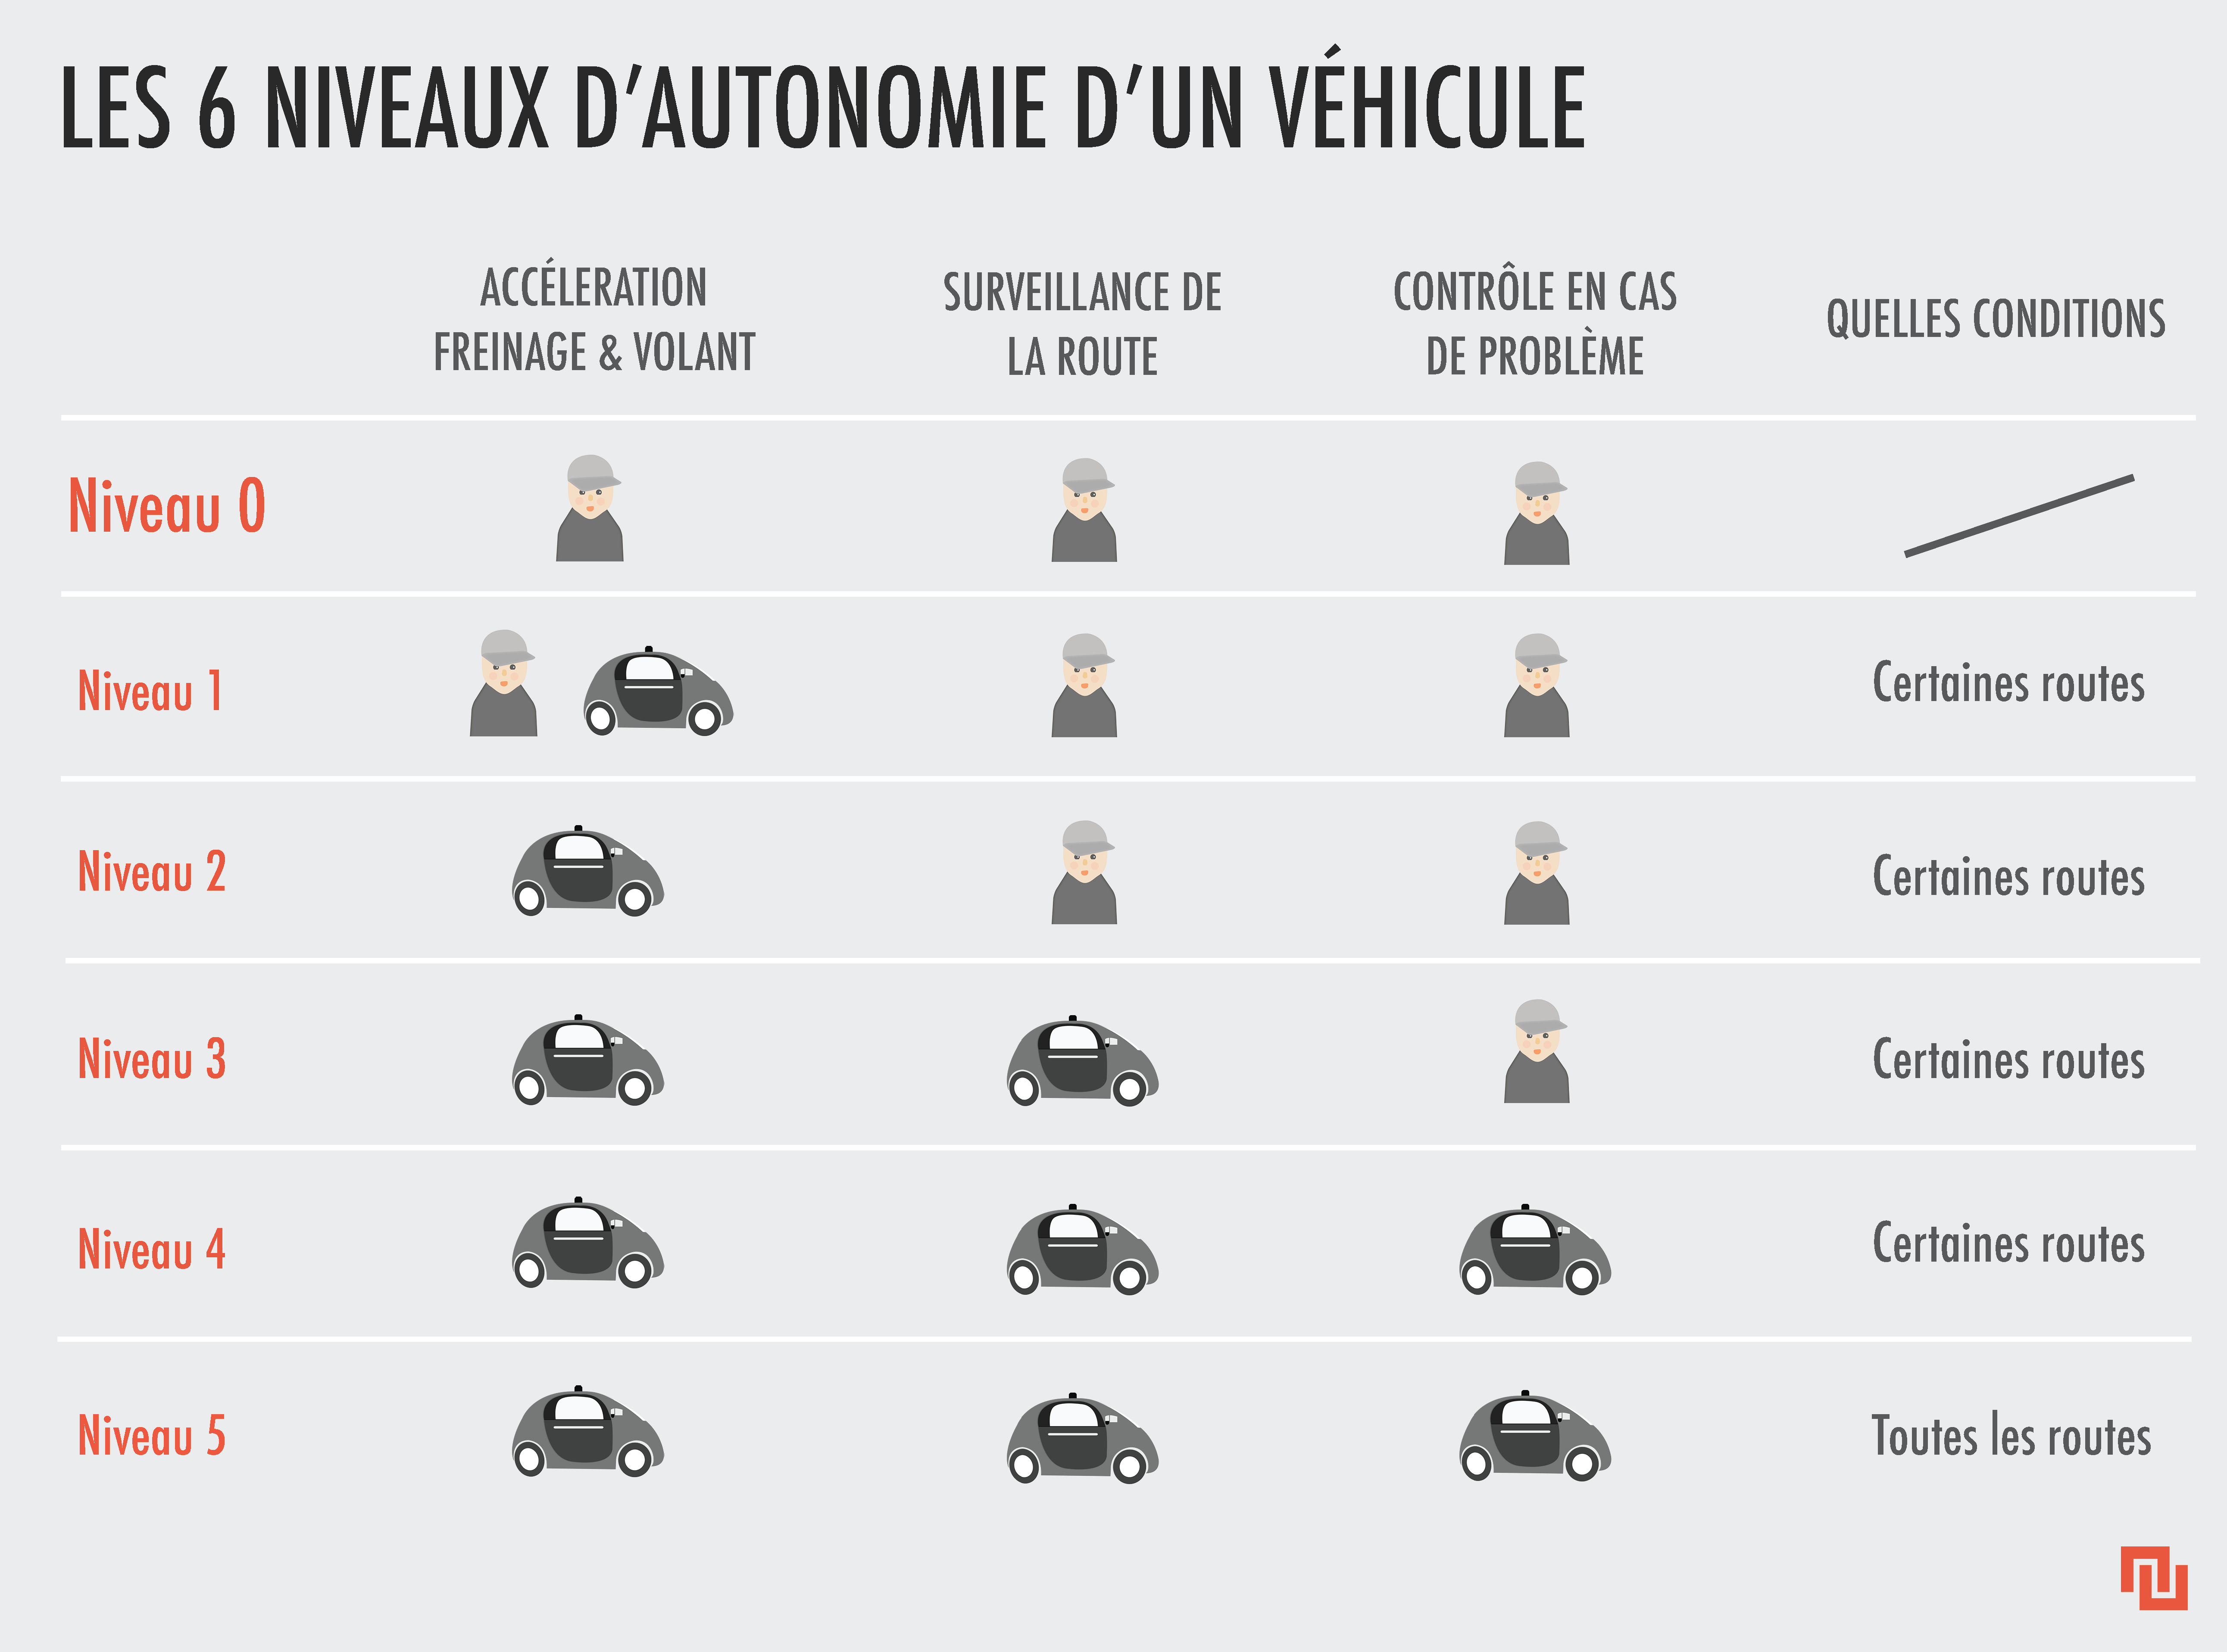 Les degrés d'autonomisation d'un véhicule. // Source : Chloé Batiot pour Numerama